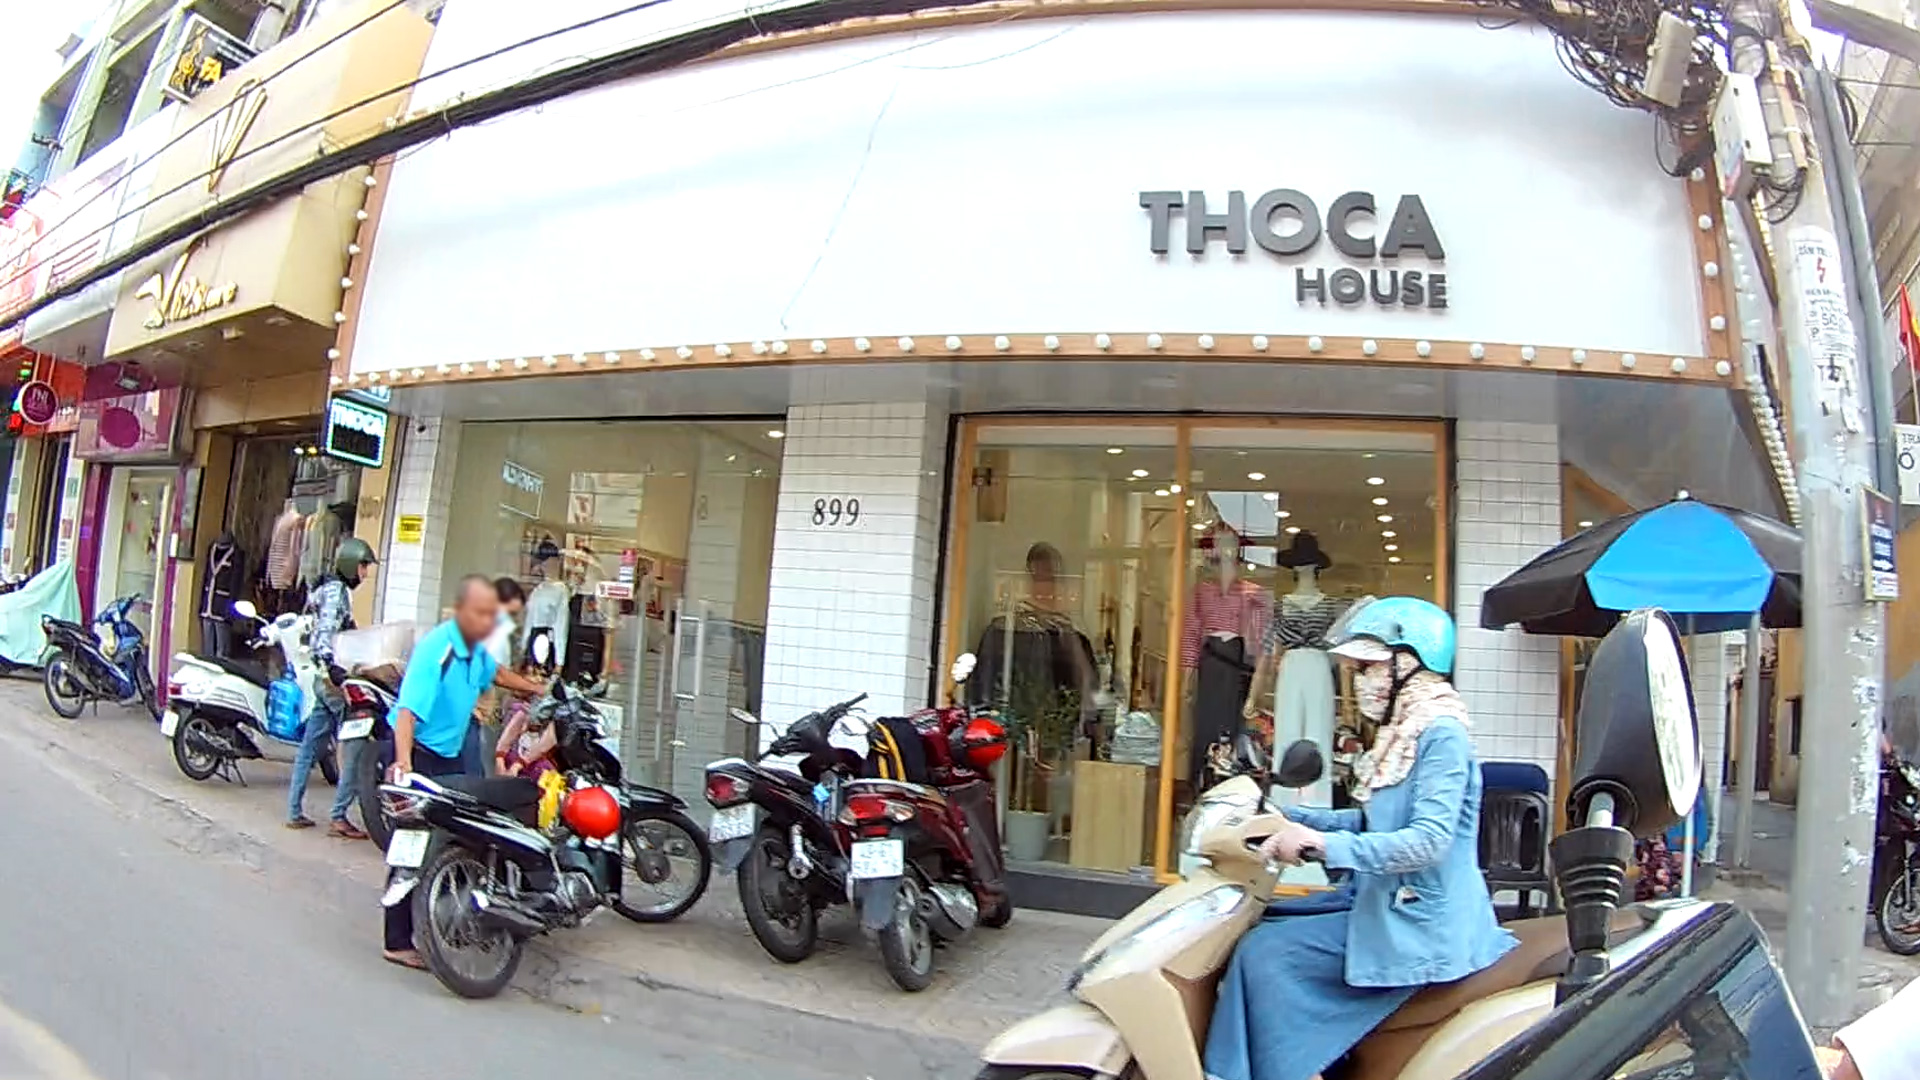 Shop thời trang Thoca House đường Cách mạng tháng 8 - TÌM XUNG QUANH